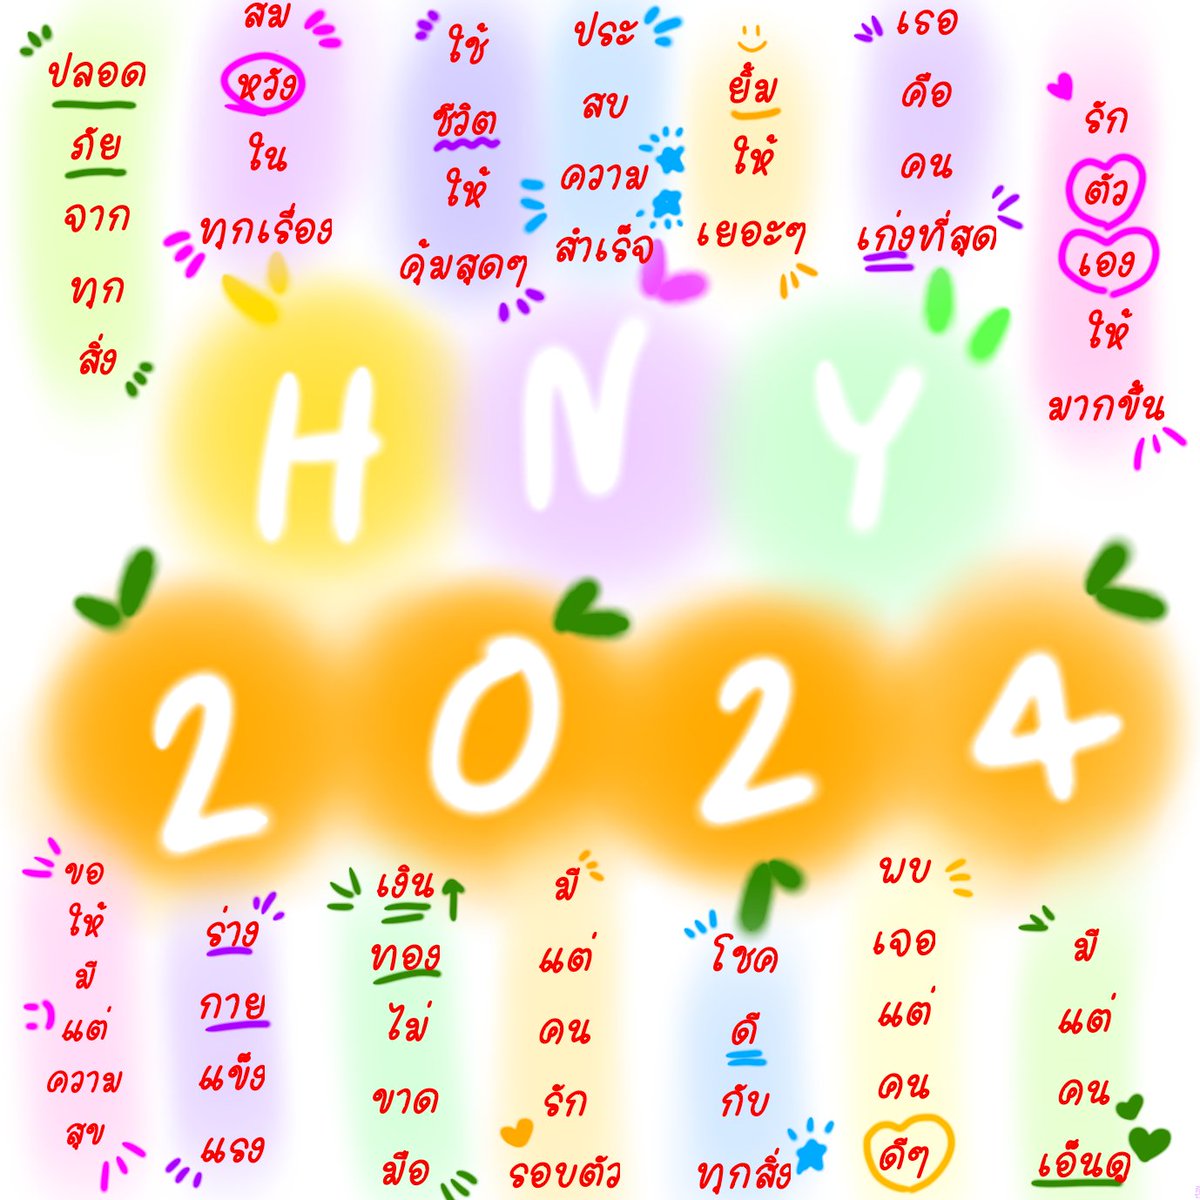 Happy new year ARMY 🎊
#HappyNewYear2024
#ARMY #BTSARMY 
#HappyNewYear